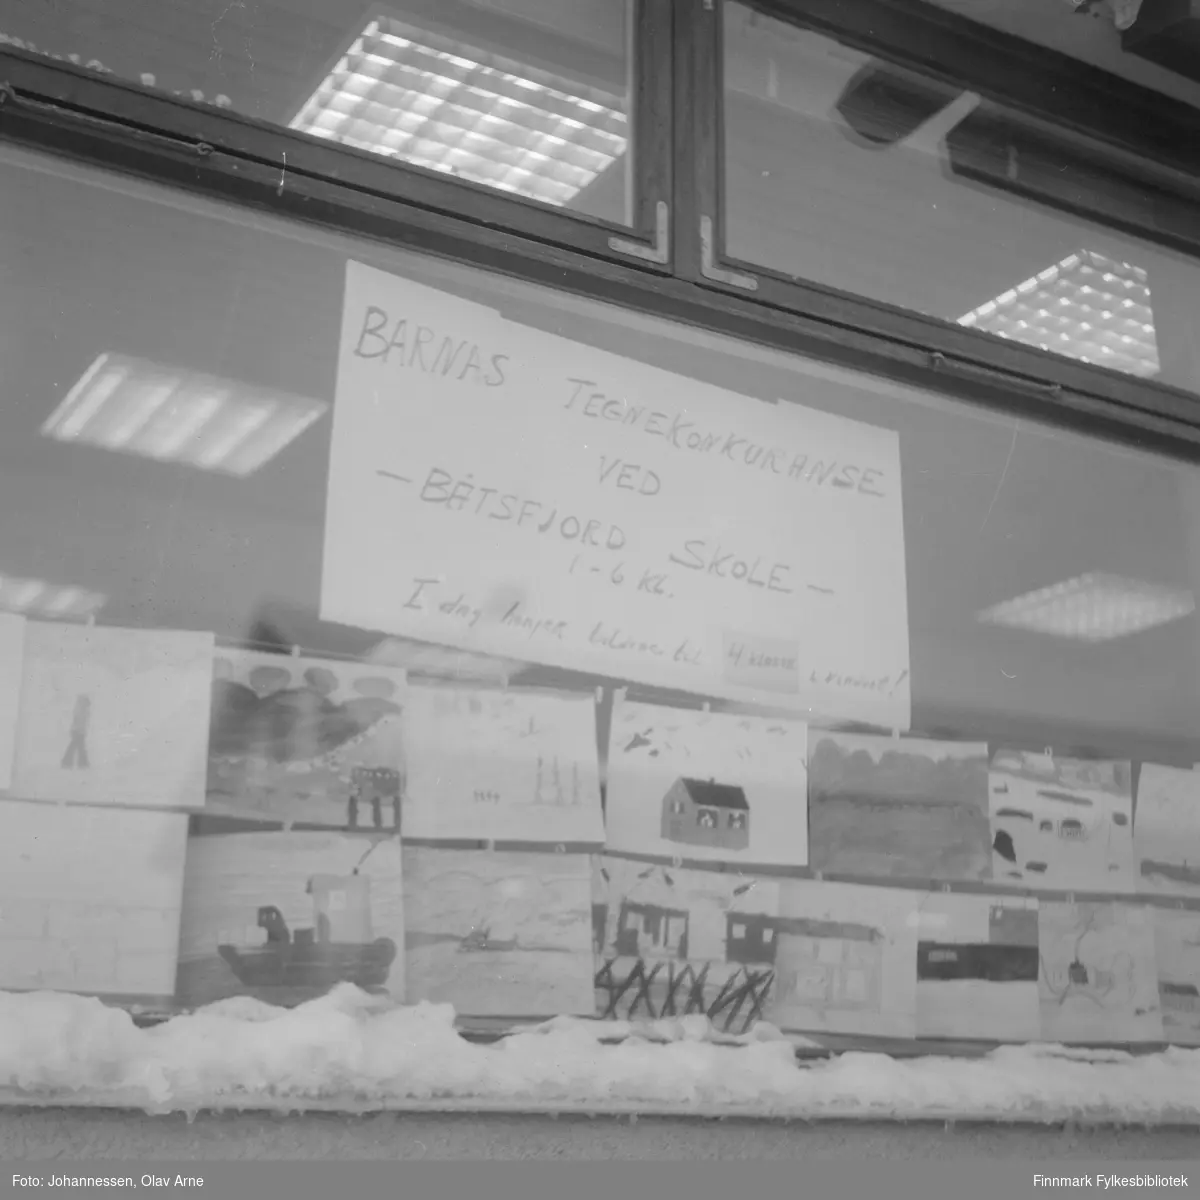 Tegnekonkurranse i Fiskernes Bank i Båtsfjord, Hindberggata 19

På plakaten står det skrevet: Barnas tegnekonkuranse ved Båtsfjord skole 1 - 6 kl. I dag henger bildene til 4. klasse i vinduet!